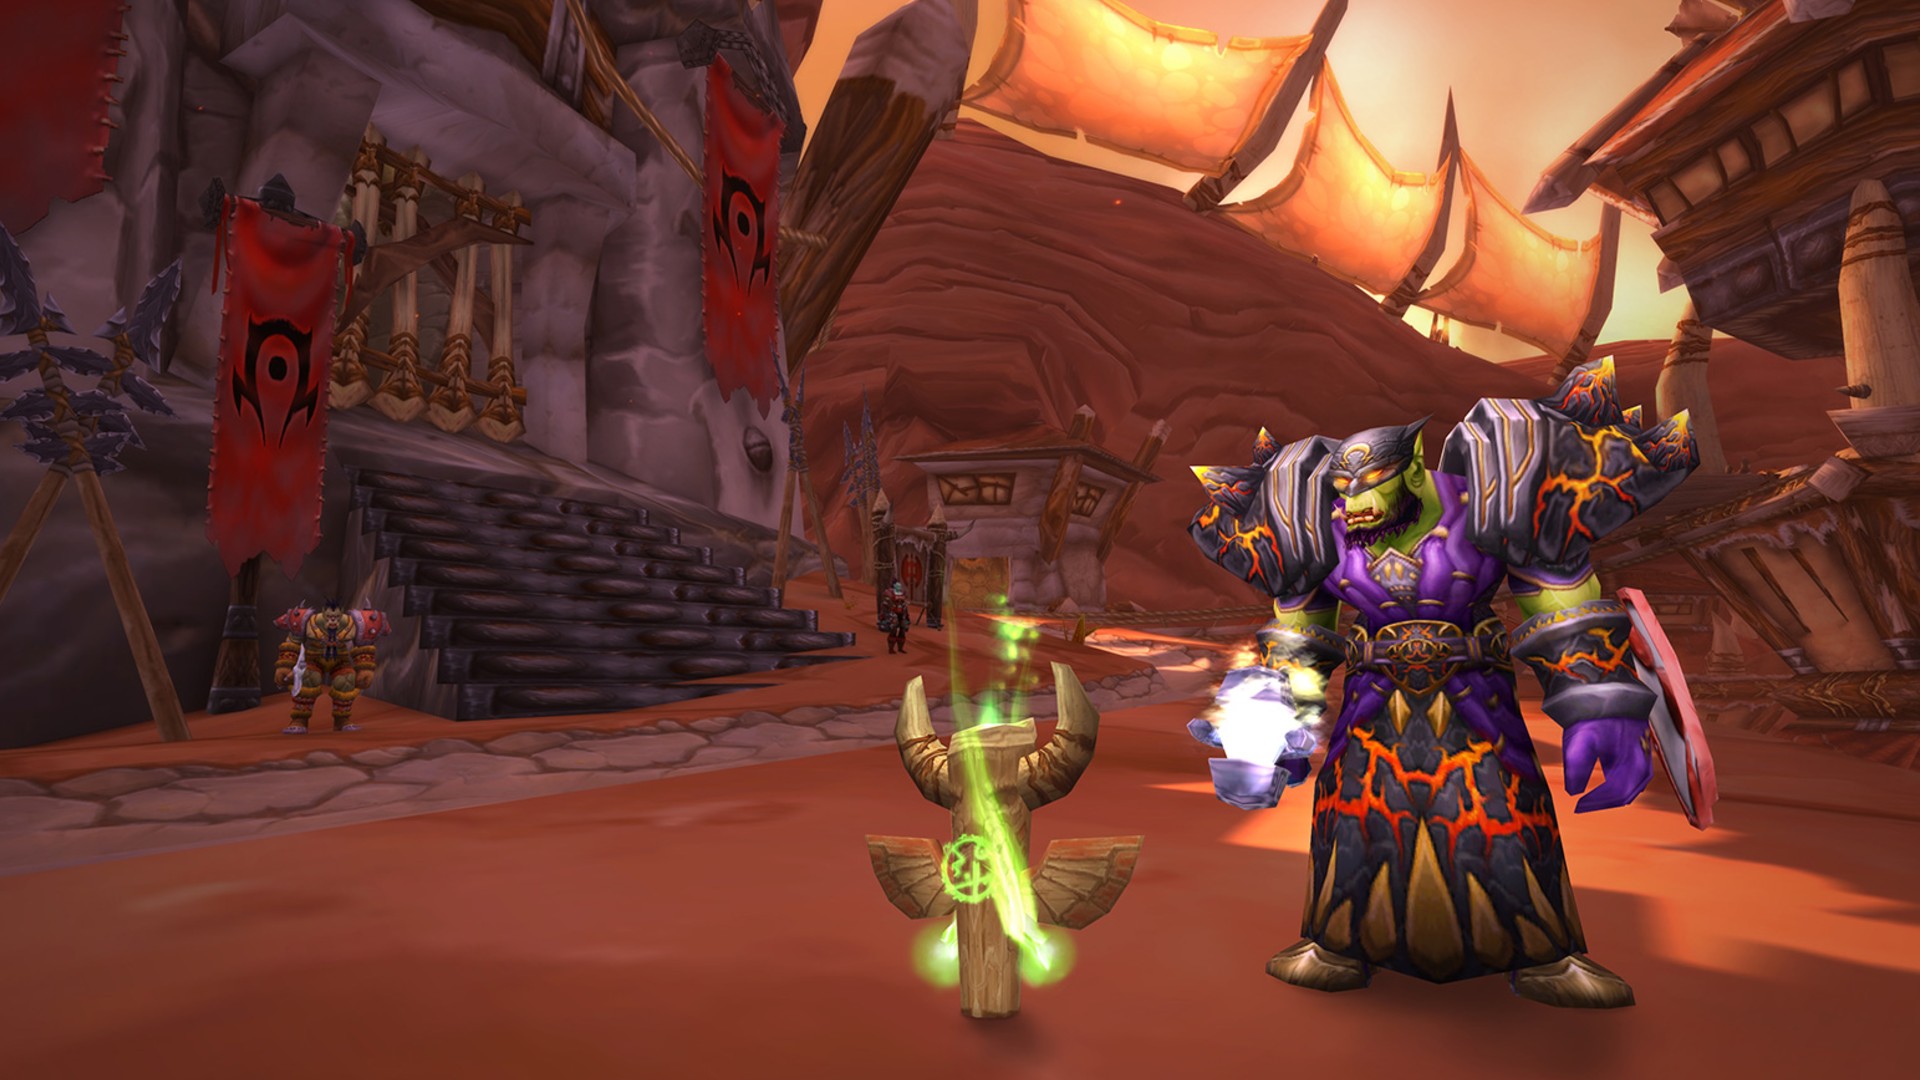 En İyi MMORPG Oyunları: World of Warcraft Classic. Resim bir artefaktın yakınında duran bir ork gösterir